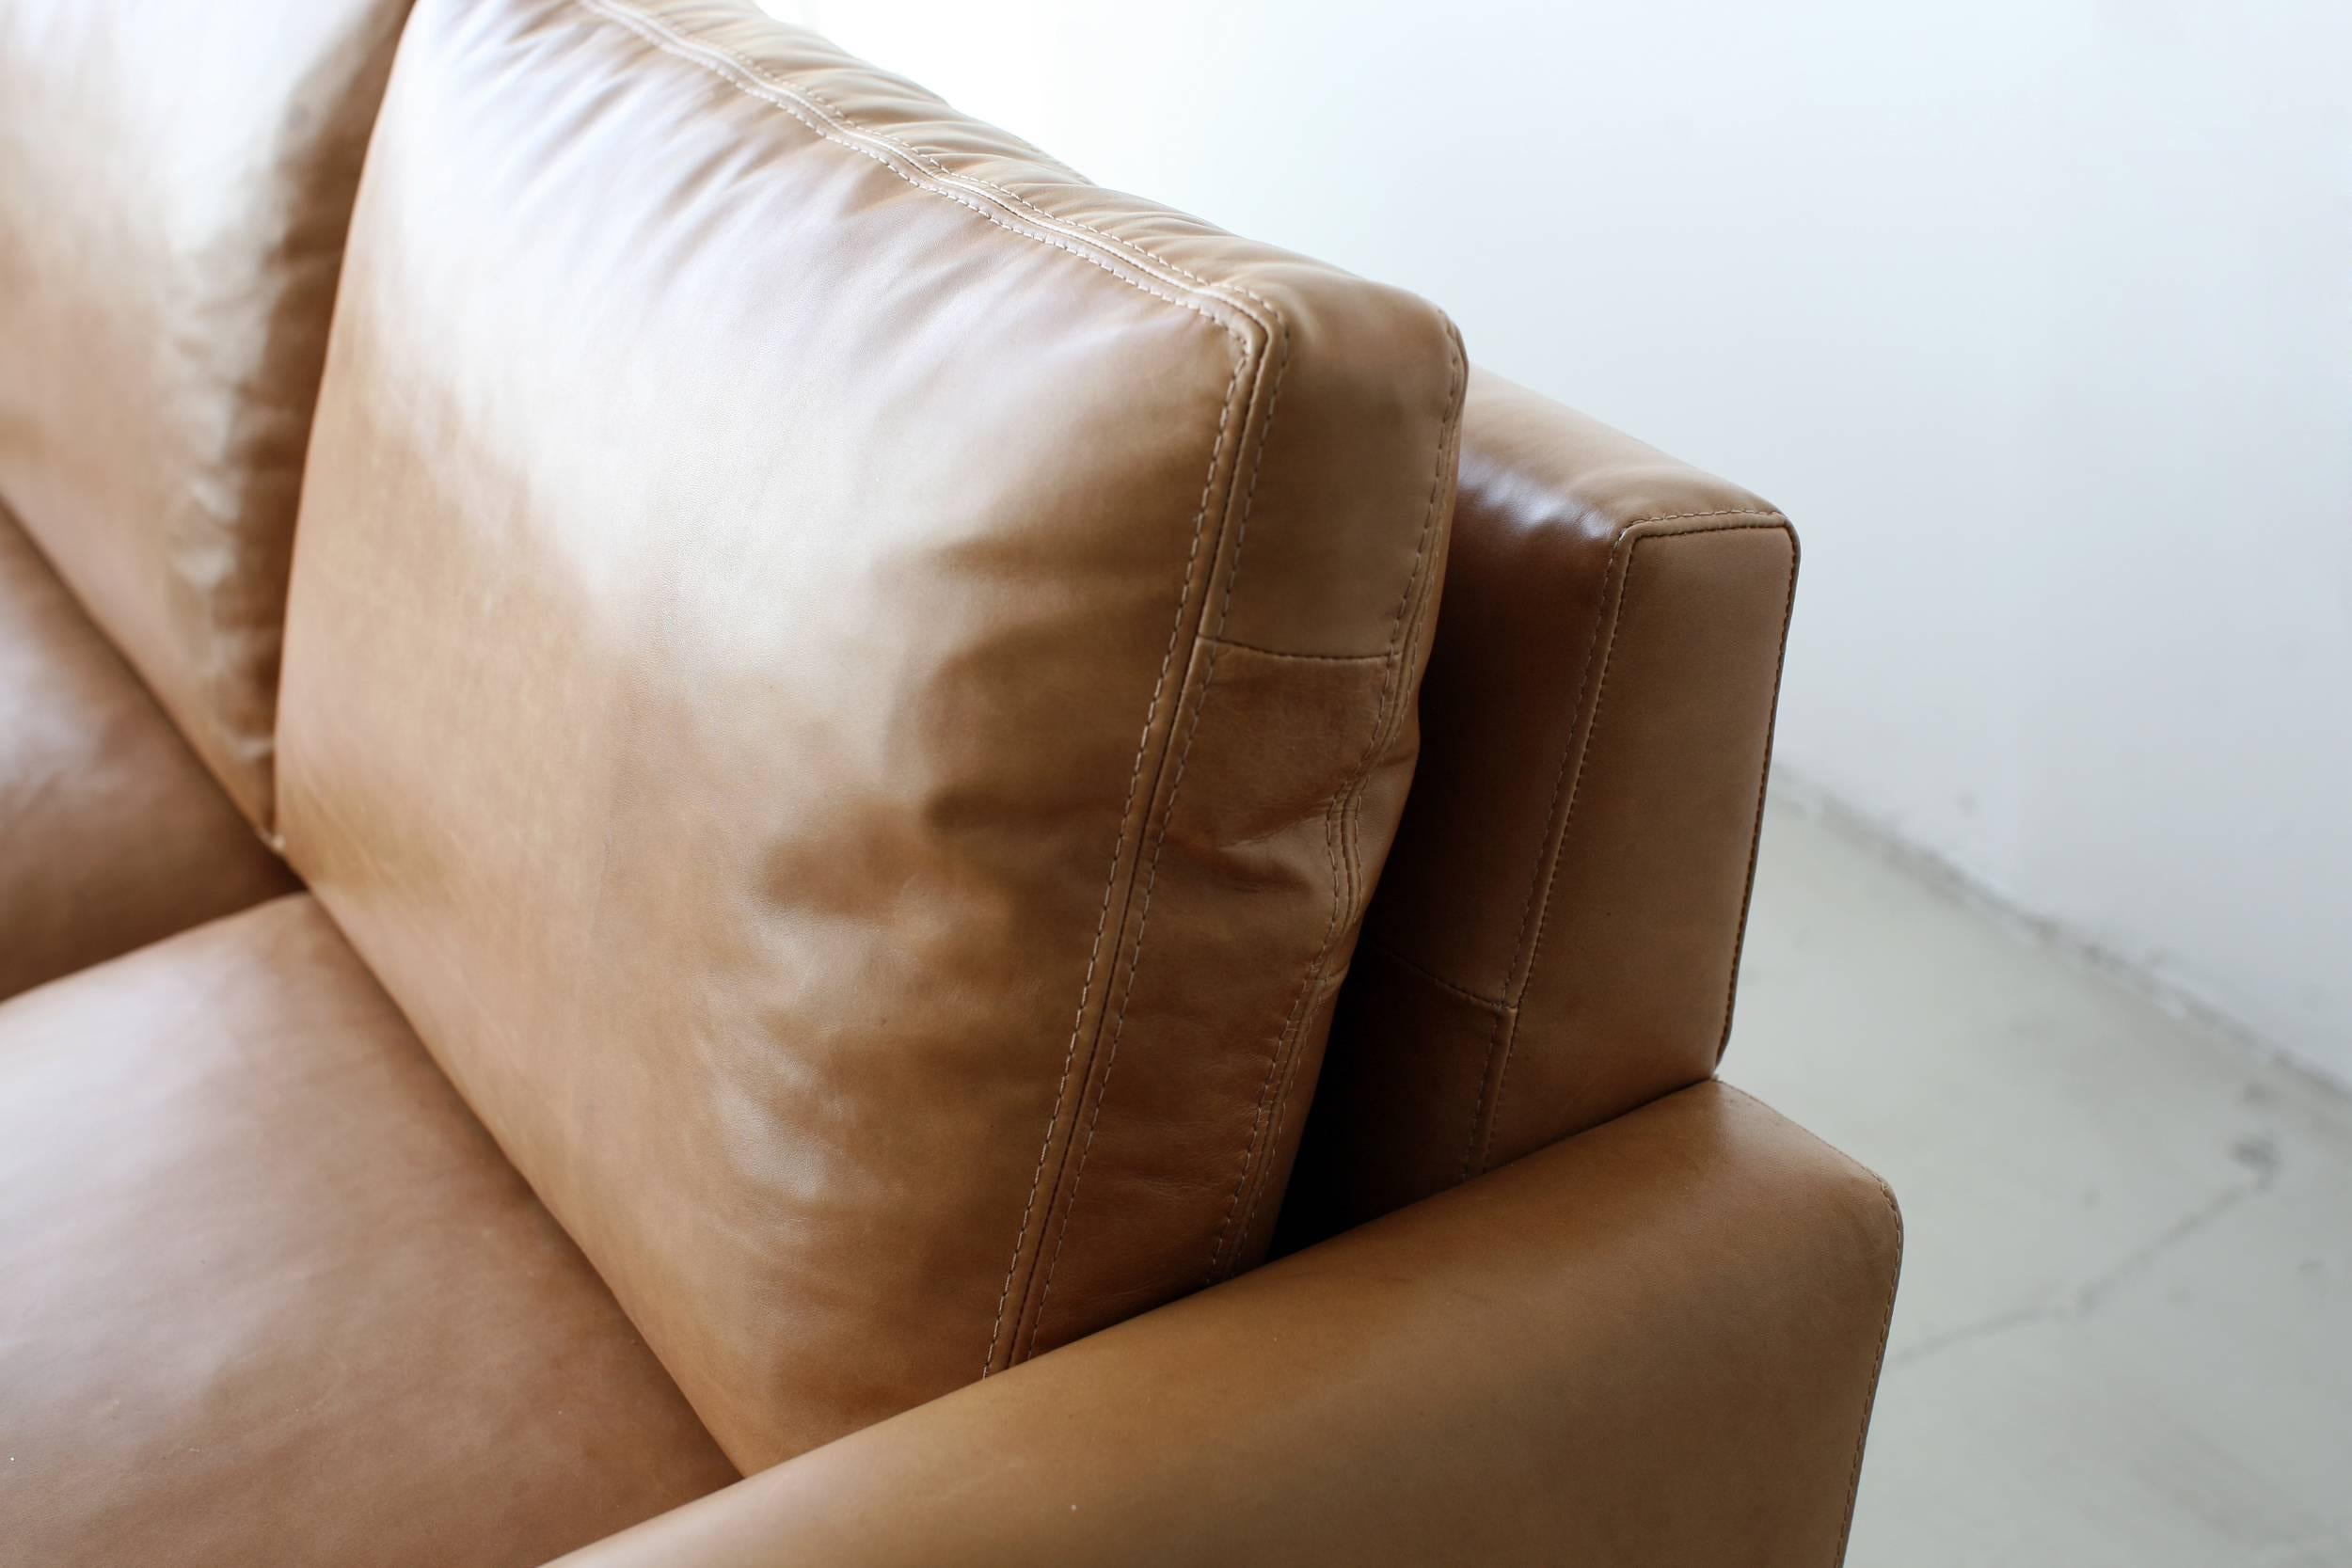 Le canapé standard est d'une simplicité trompeuse à première vue. En y regardant de plus près, il parvient à être à la fois moderne et nostalgique, le canapé que vous emporterez avec vous de maison en maison pendant des décennies.
